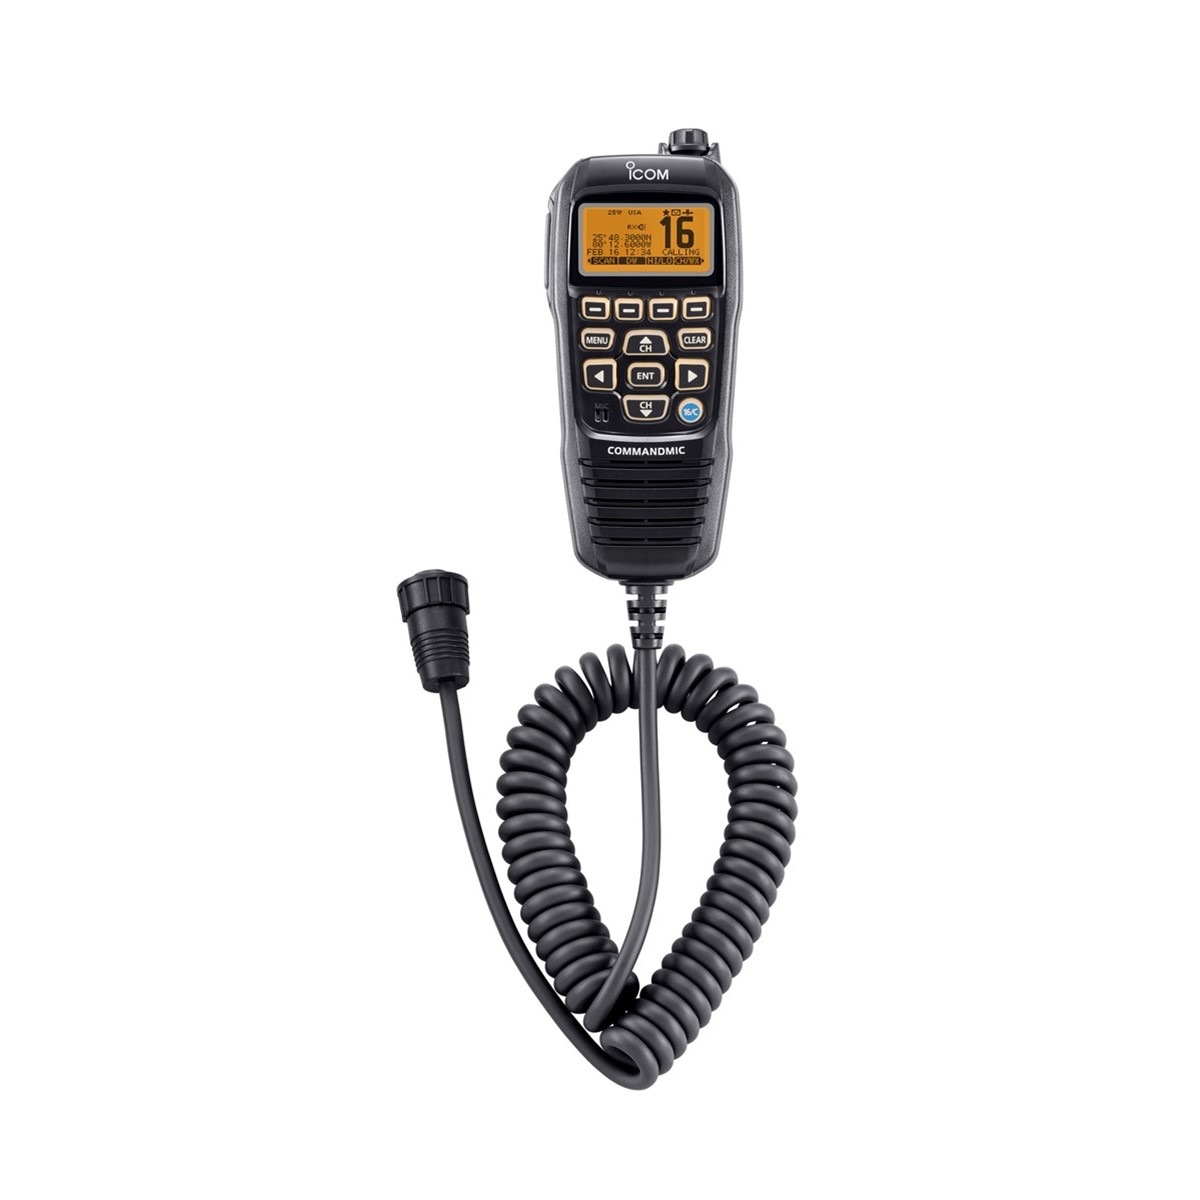 Micrófono Icom HM-195B para radio móvil